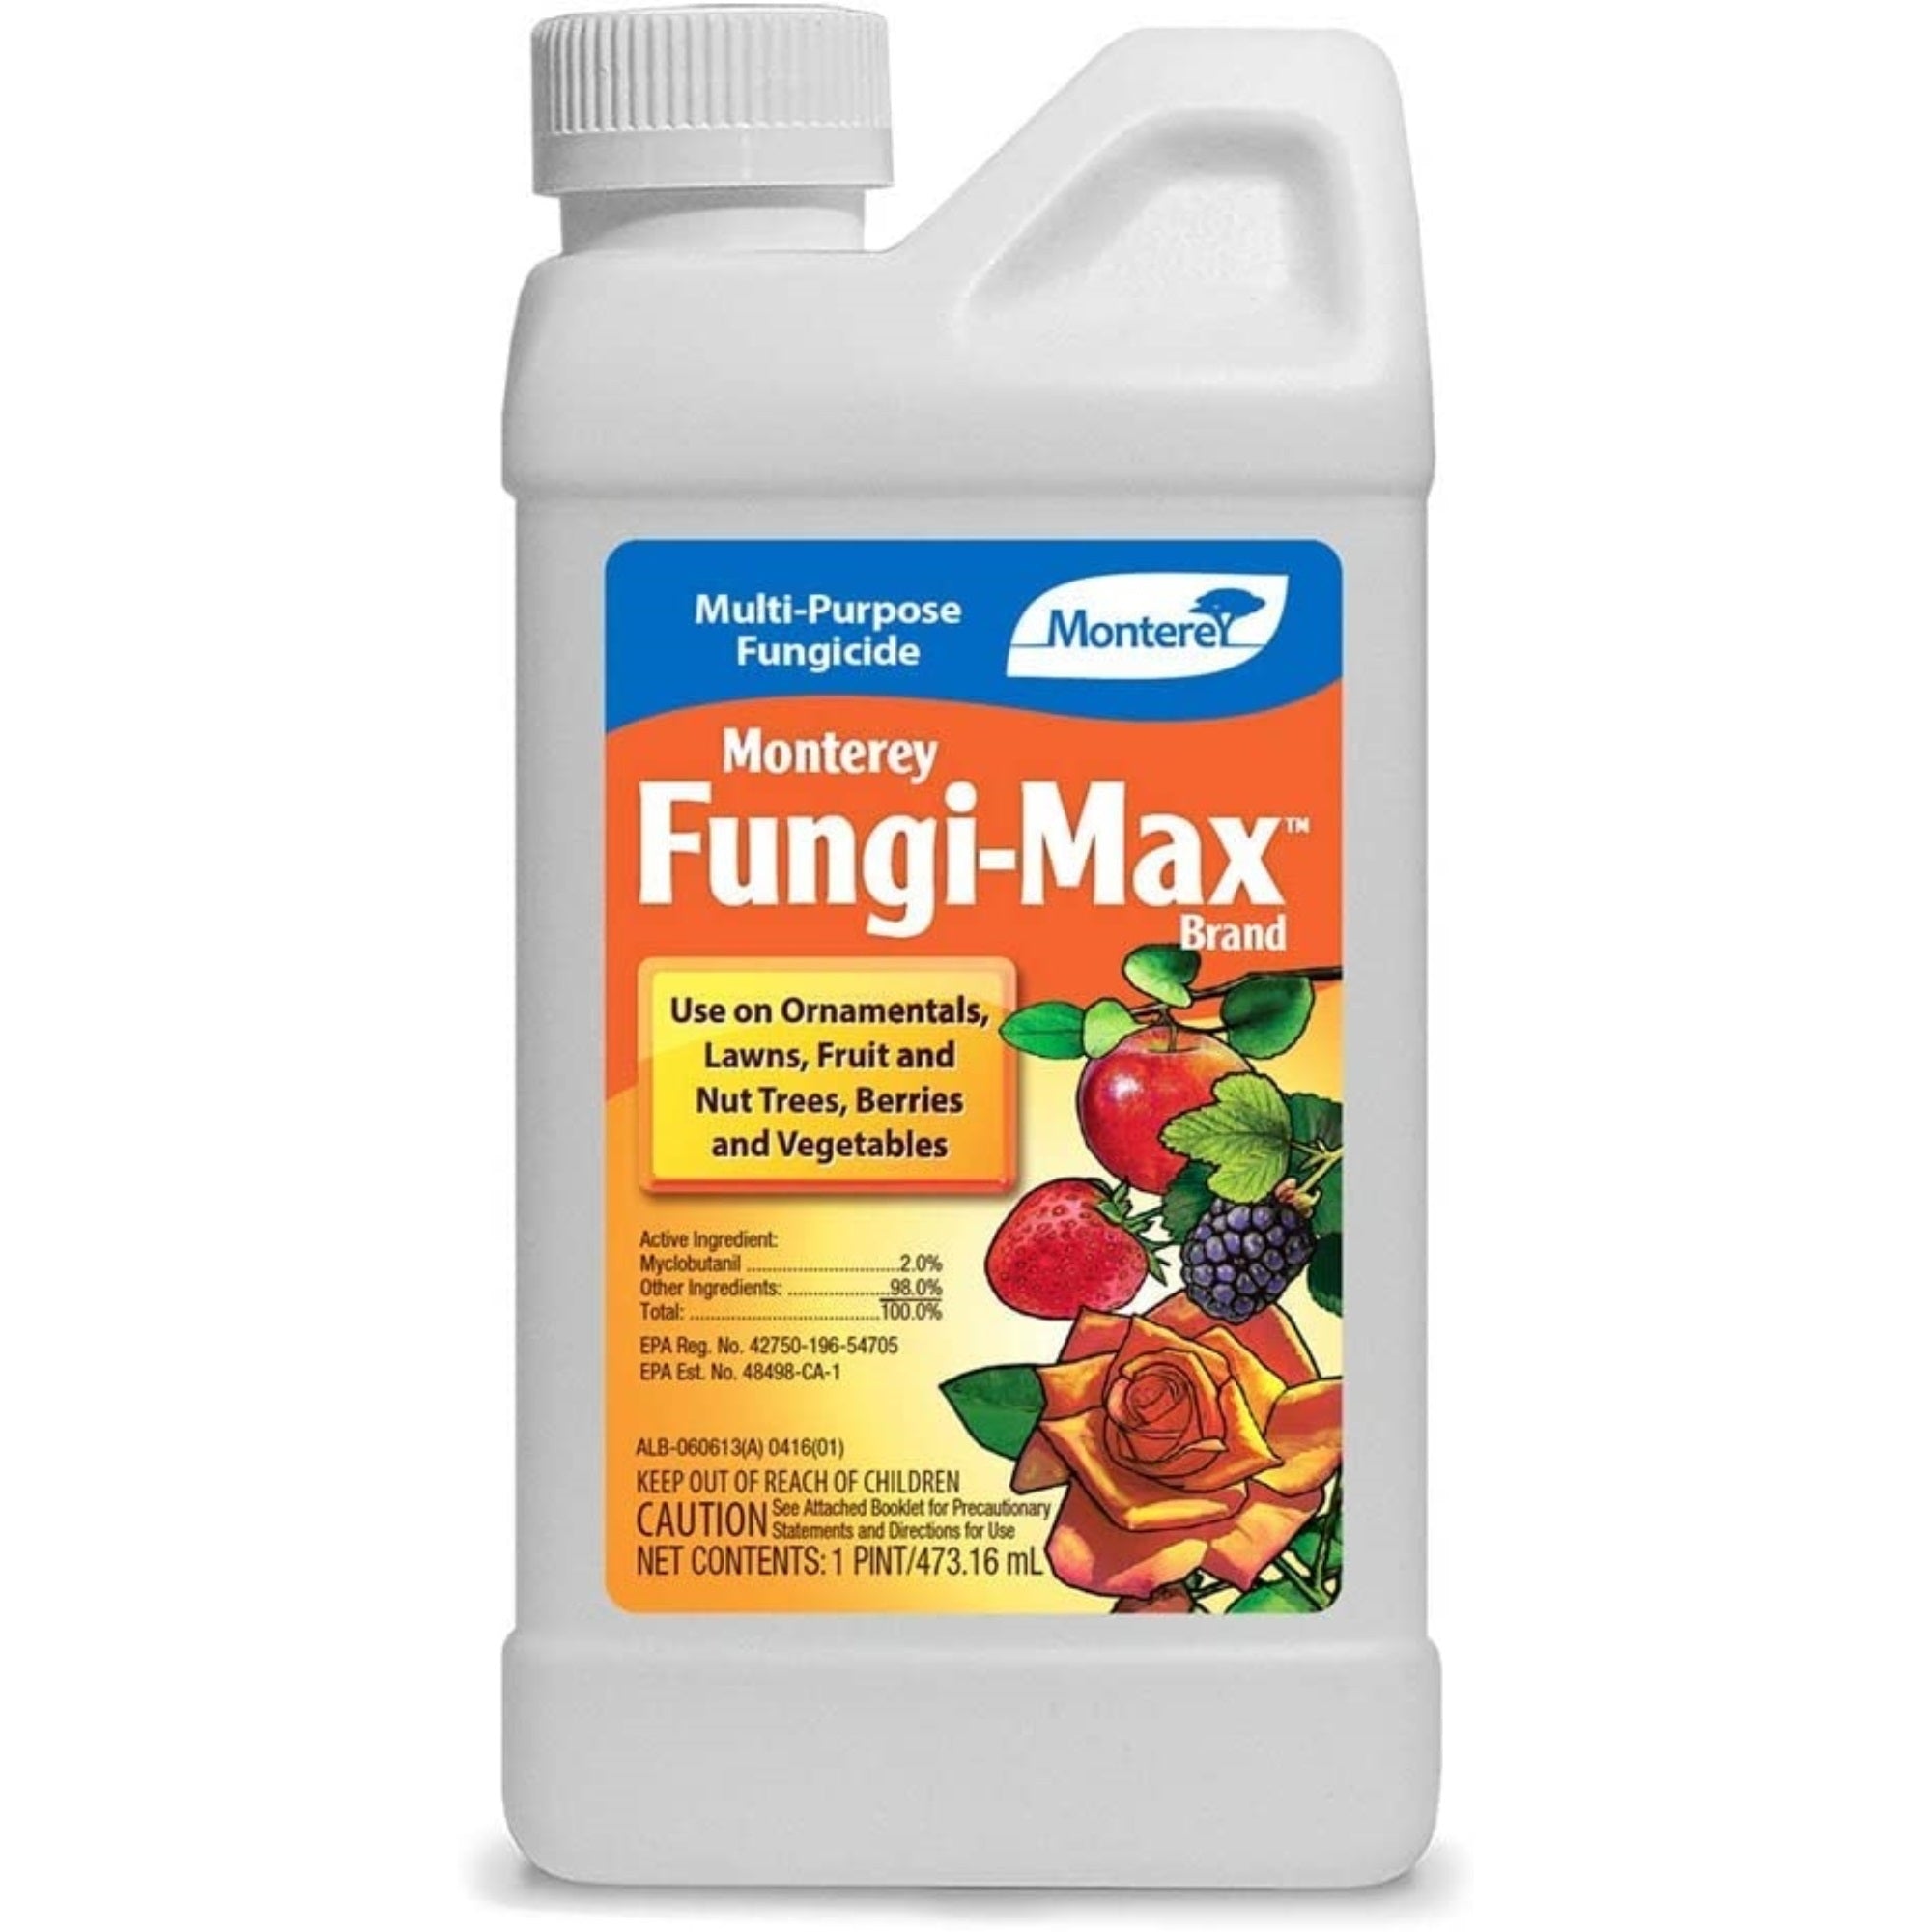 Monterey Fungi-Max Brand Concentrate Multi-Purpose Lawn & Garden Fungicide, 16 oz